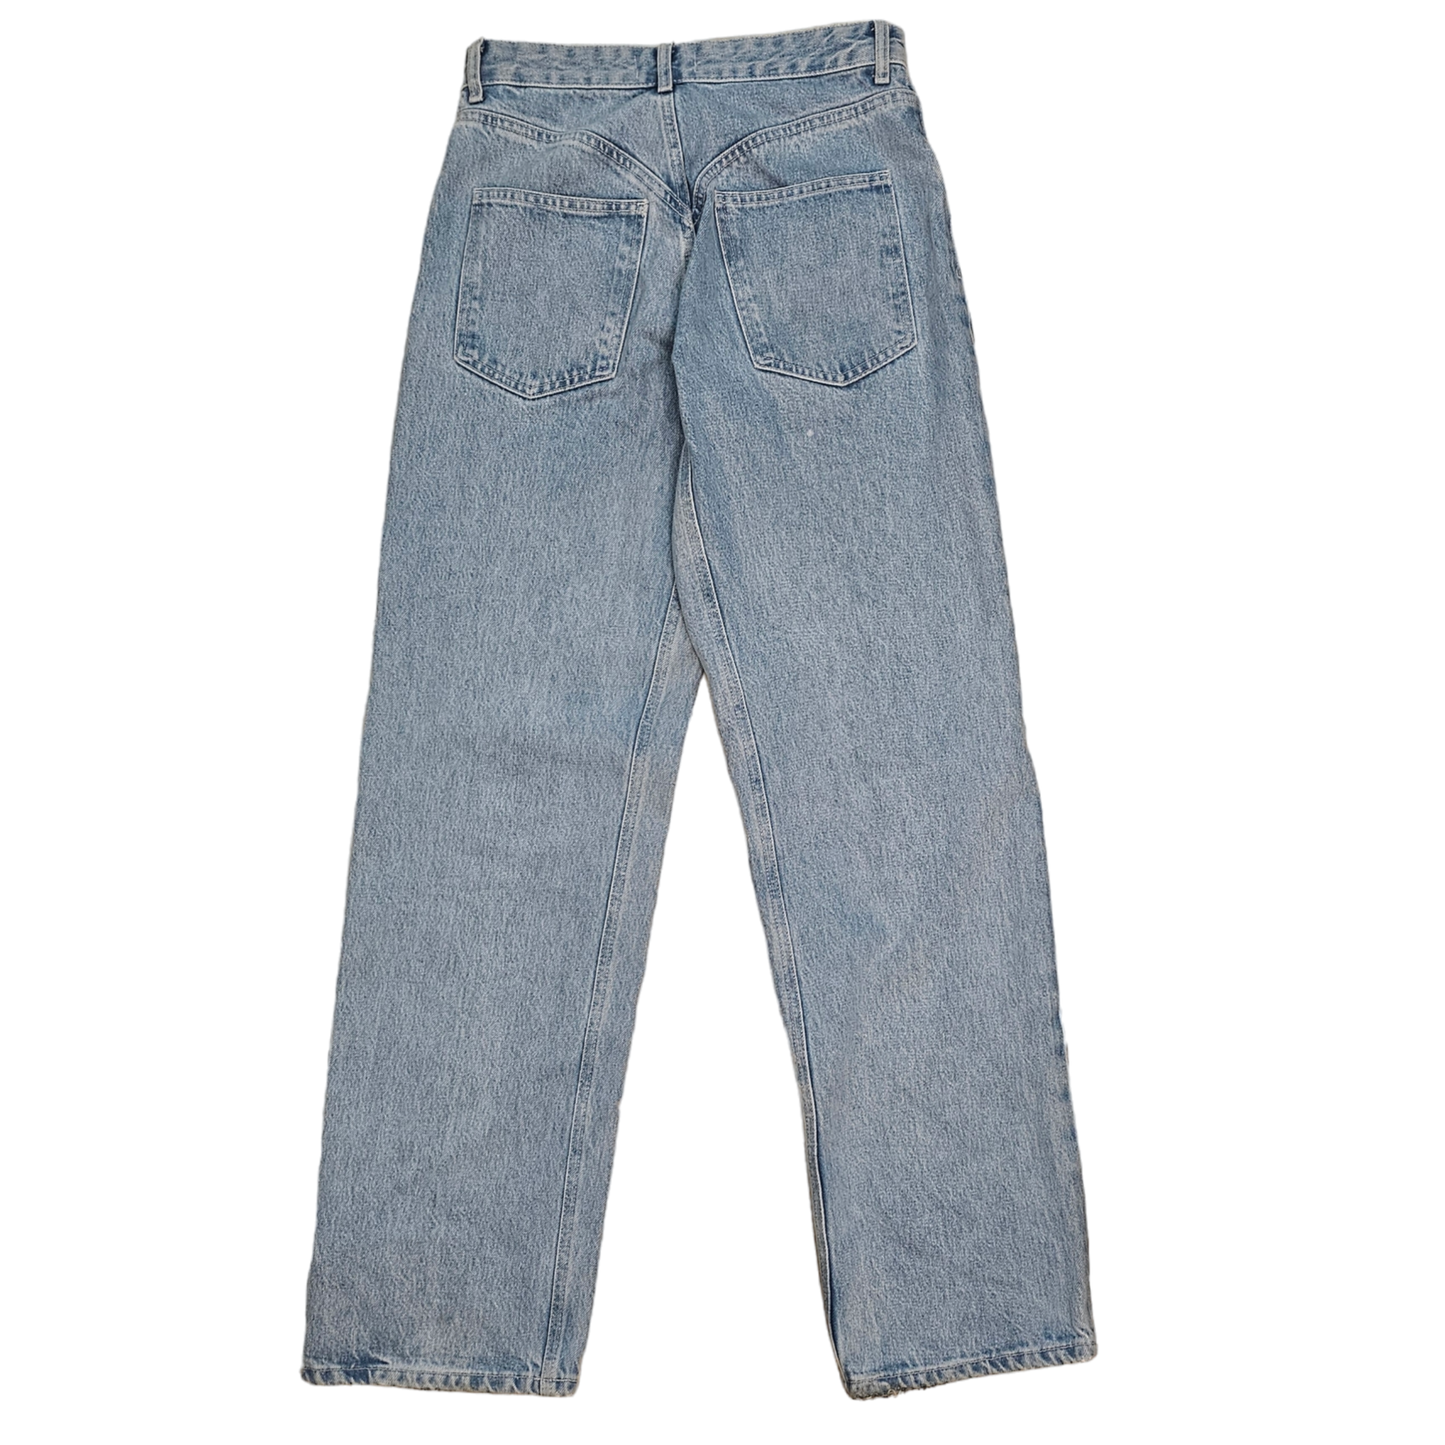 Jeans Straight By Zara  Size: 4